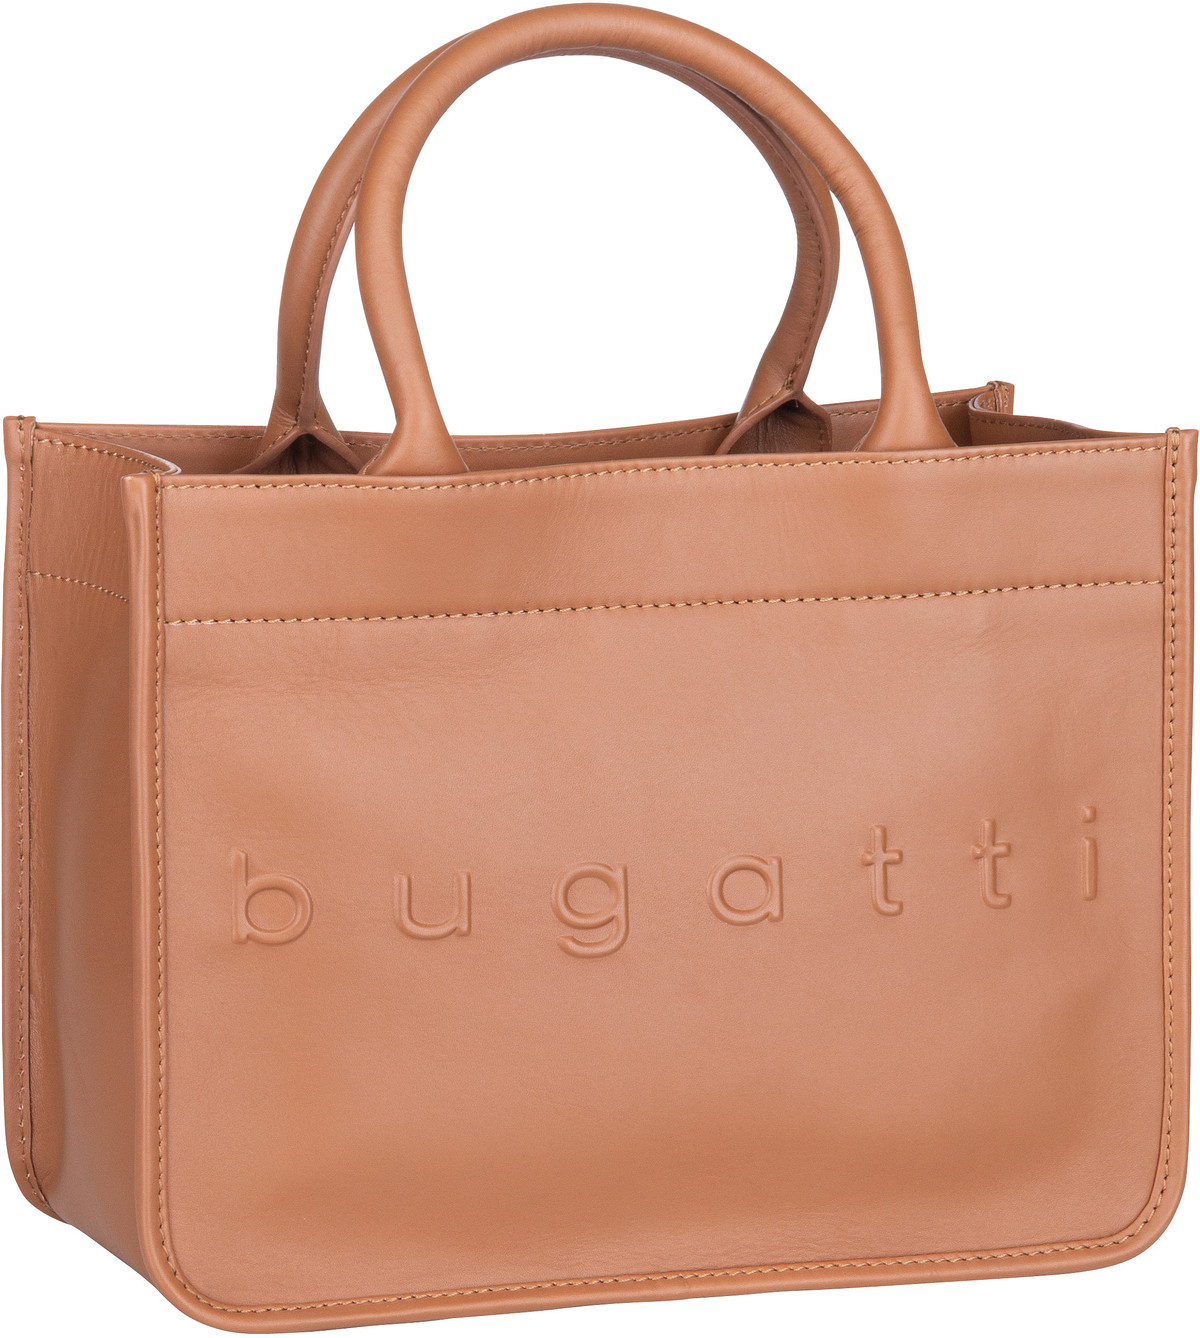 Bugatti Daphne Tote Bag S  in Cognac (8.8 Liter), Handtasche